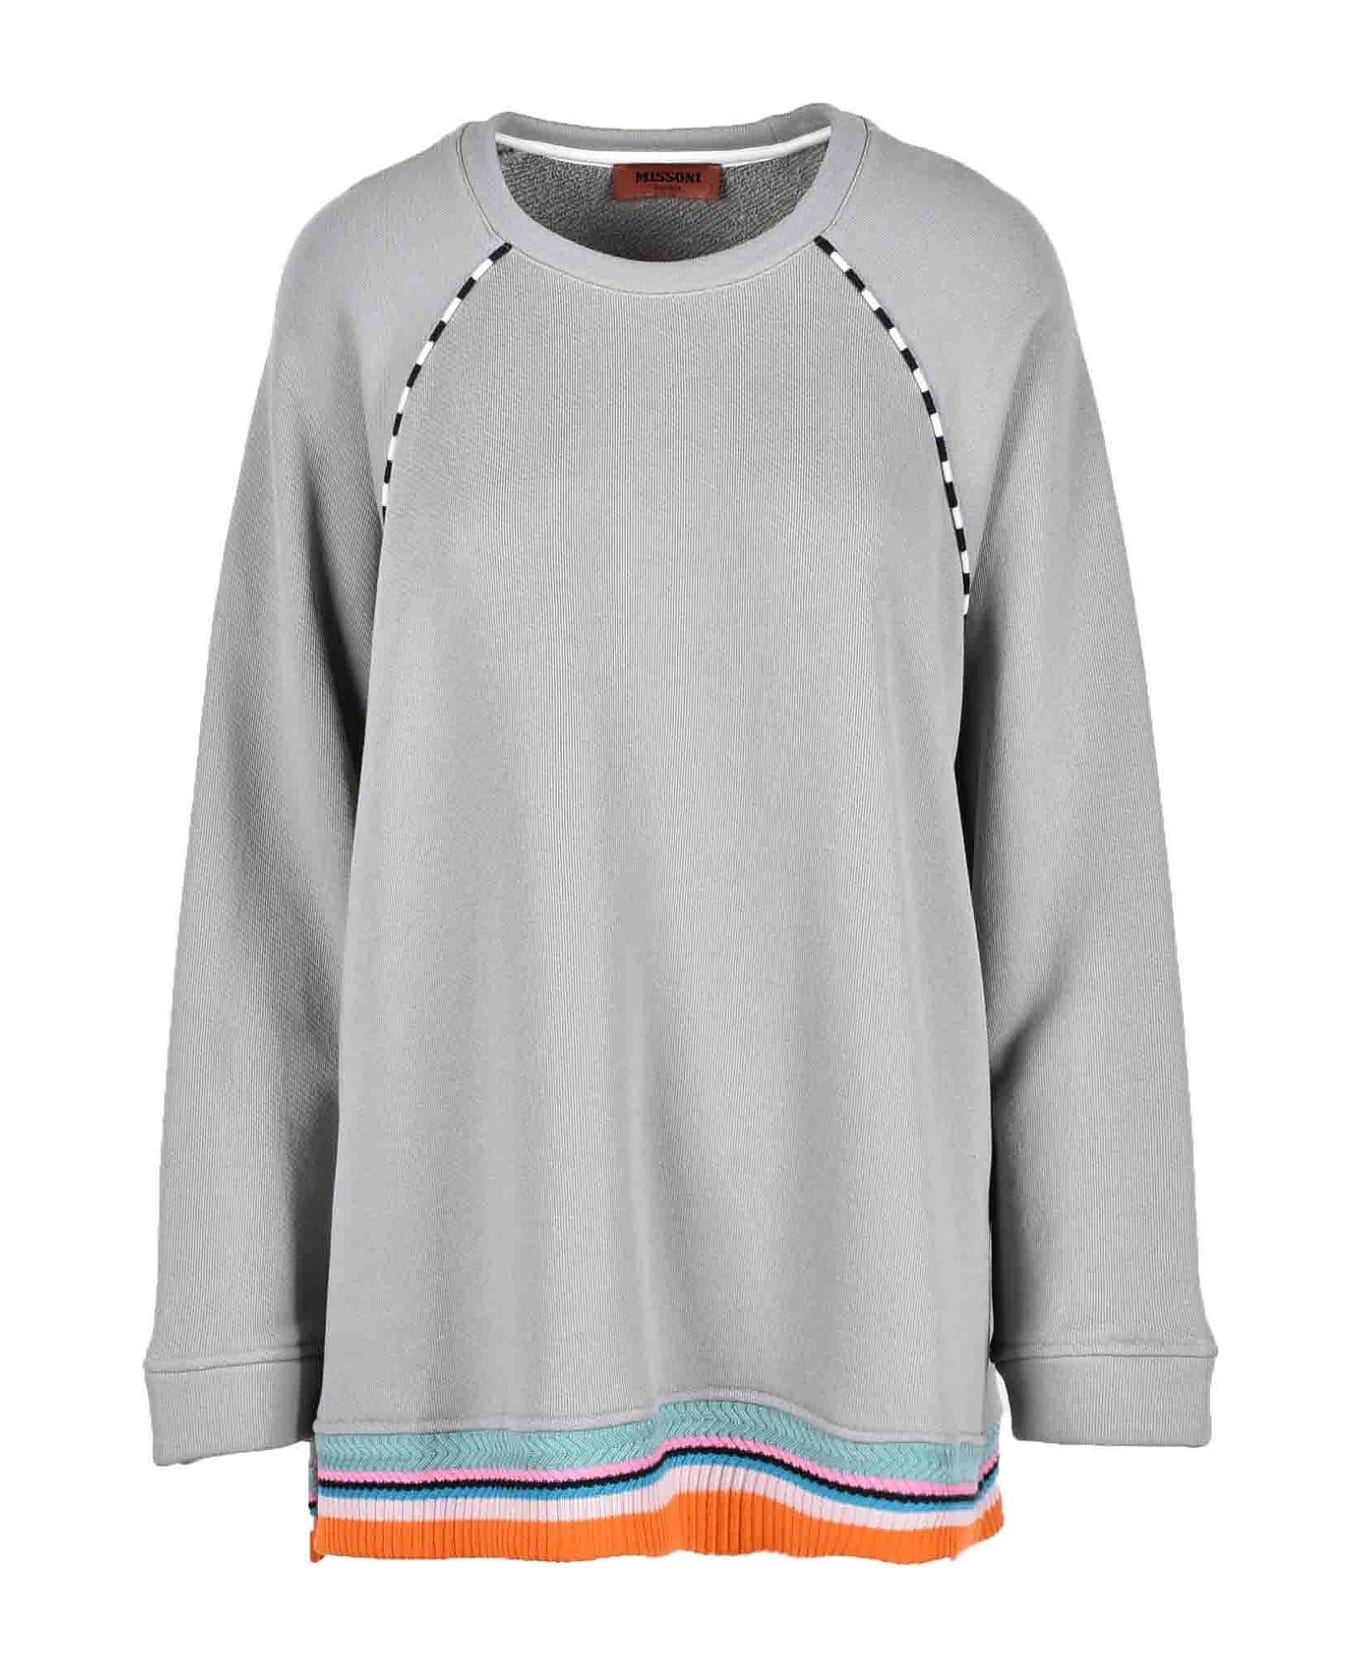 Missoni Women's Gray Sweatshirt - Gray